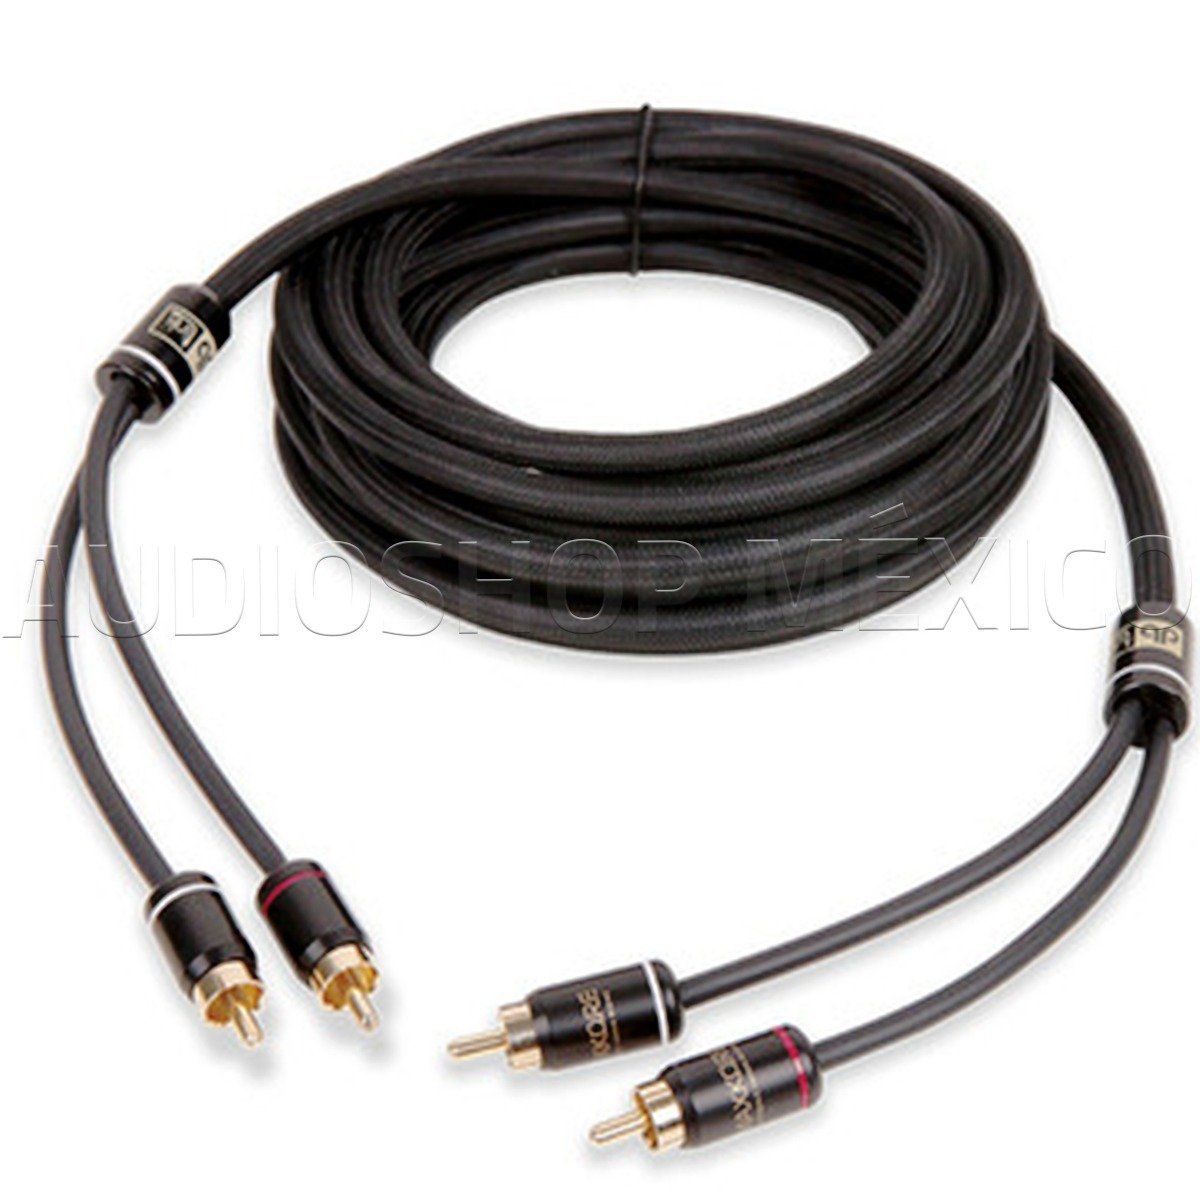 Cable RCA 100% Cobre DB Link MK6 6 pies 1.82 metros Premium Libre de oxígeno Maxkore